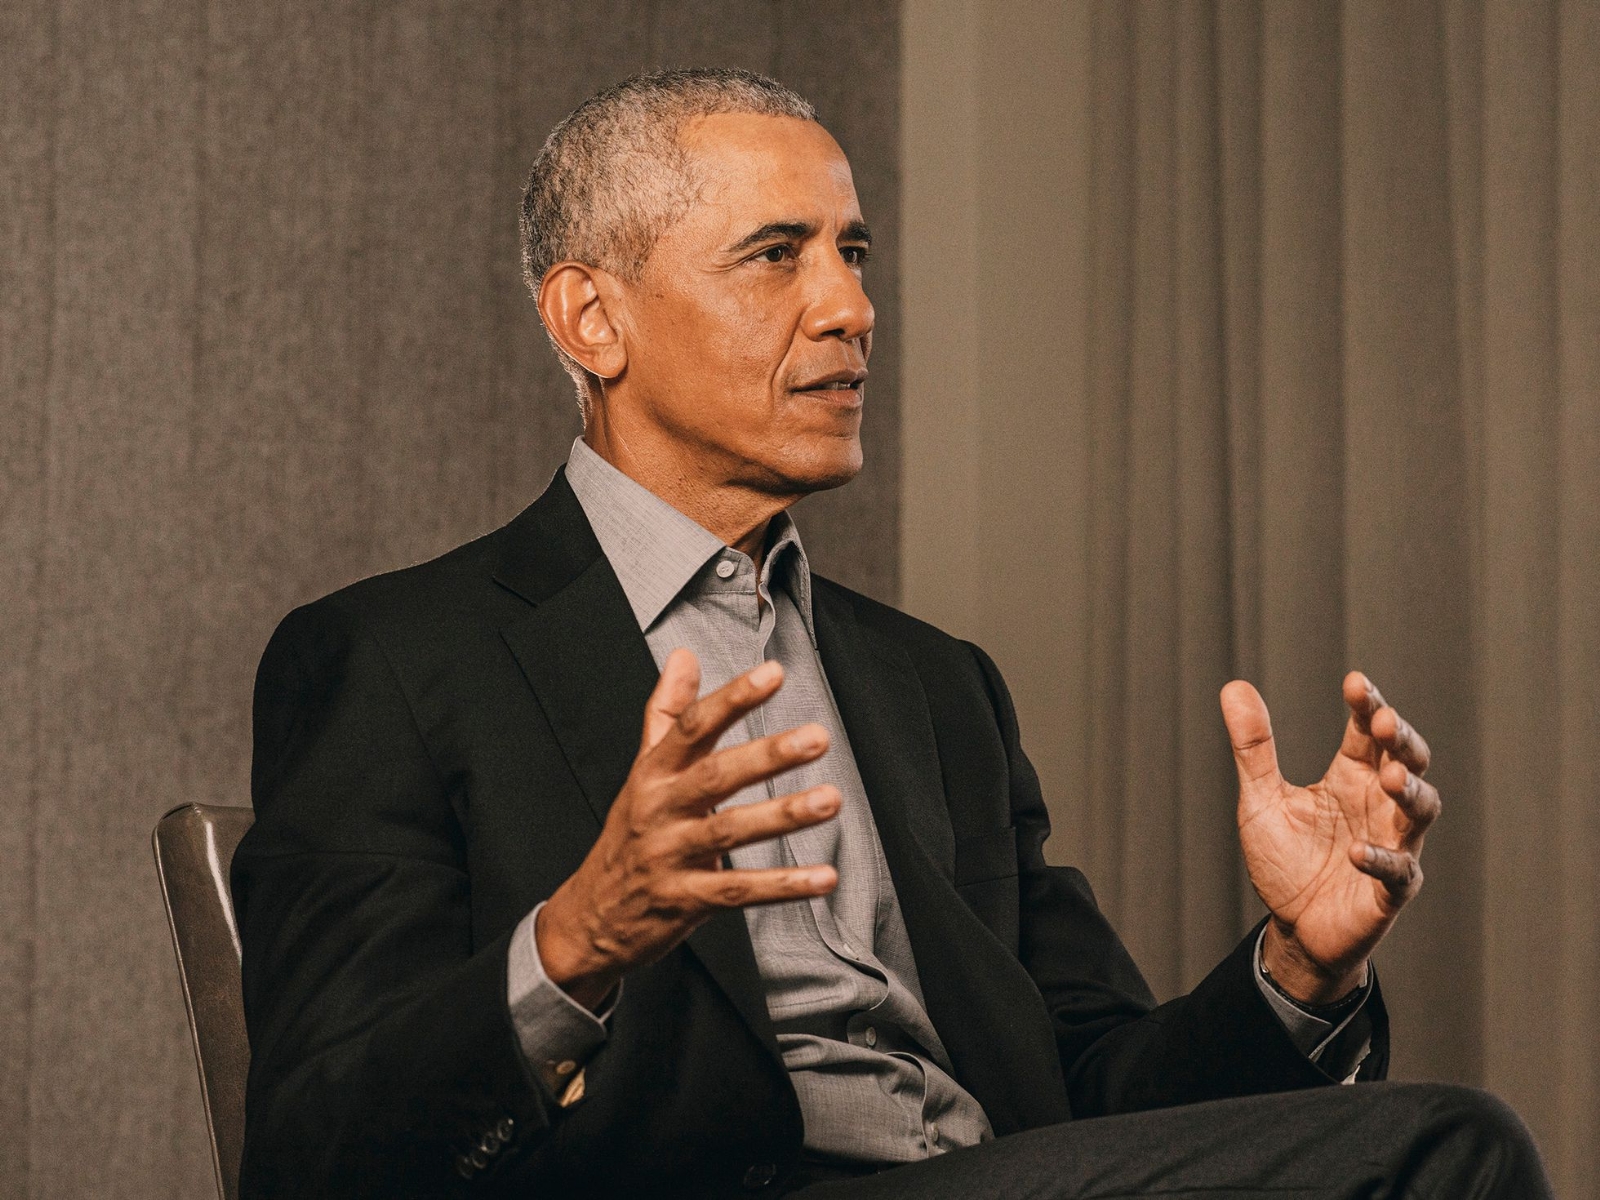 Obama gana un Emmy como narrador de un documental sobre parques nacionales